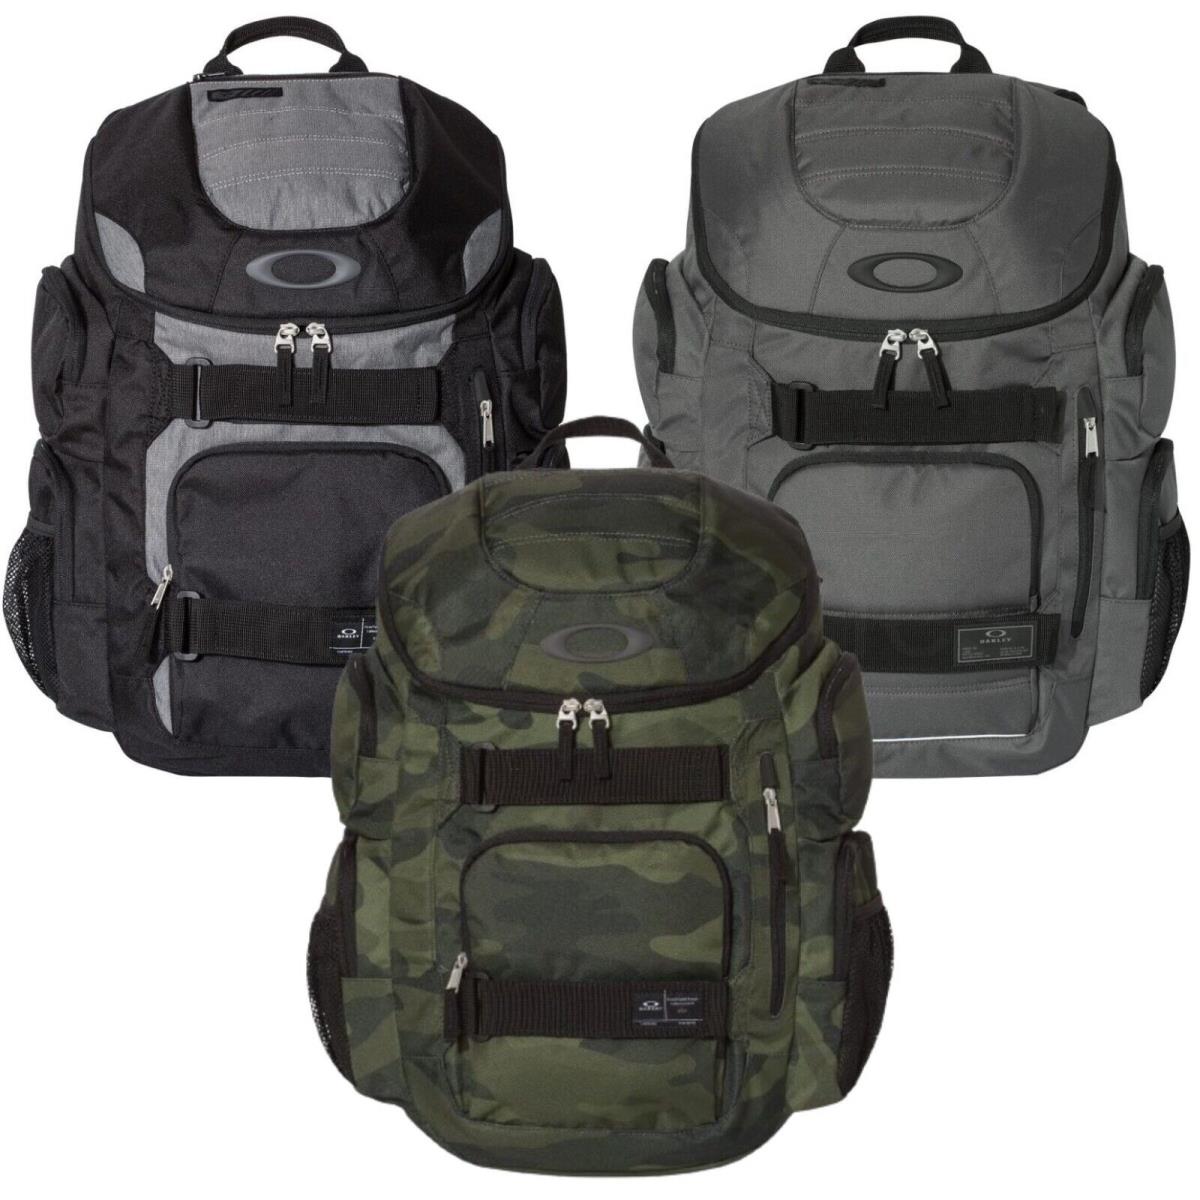 Oakley 30L School Bag Enduro Backpack Travel Pack Laptop Bag - Black, Grey, Camo